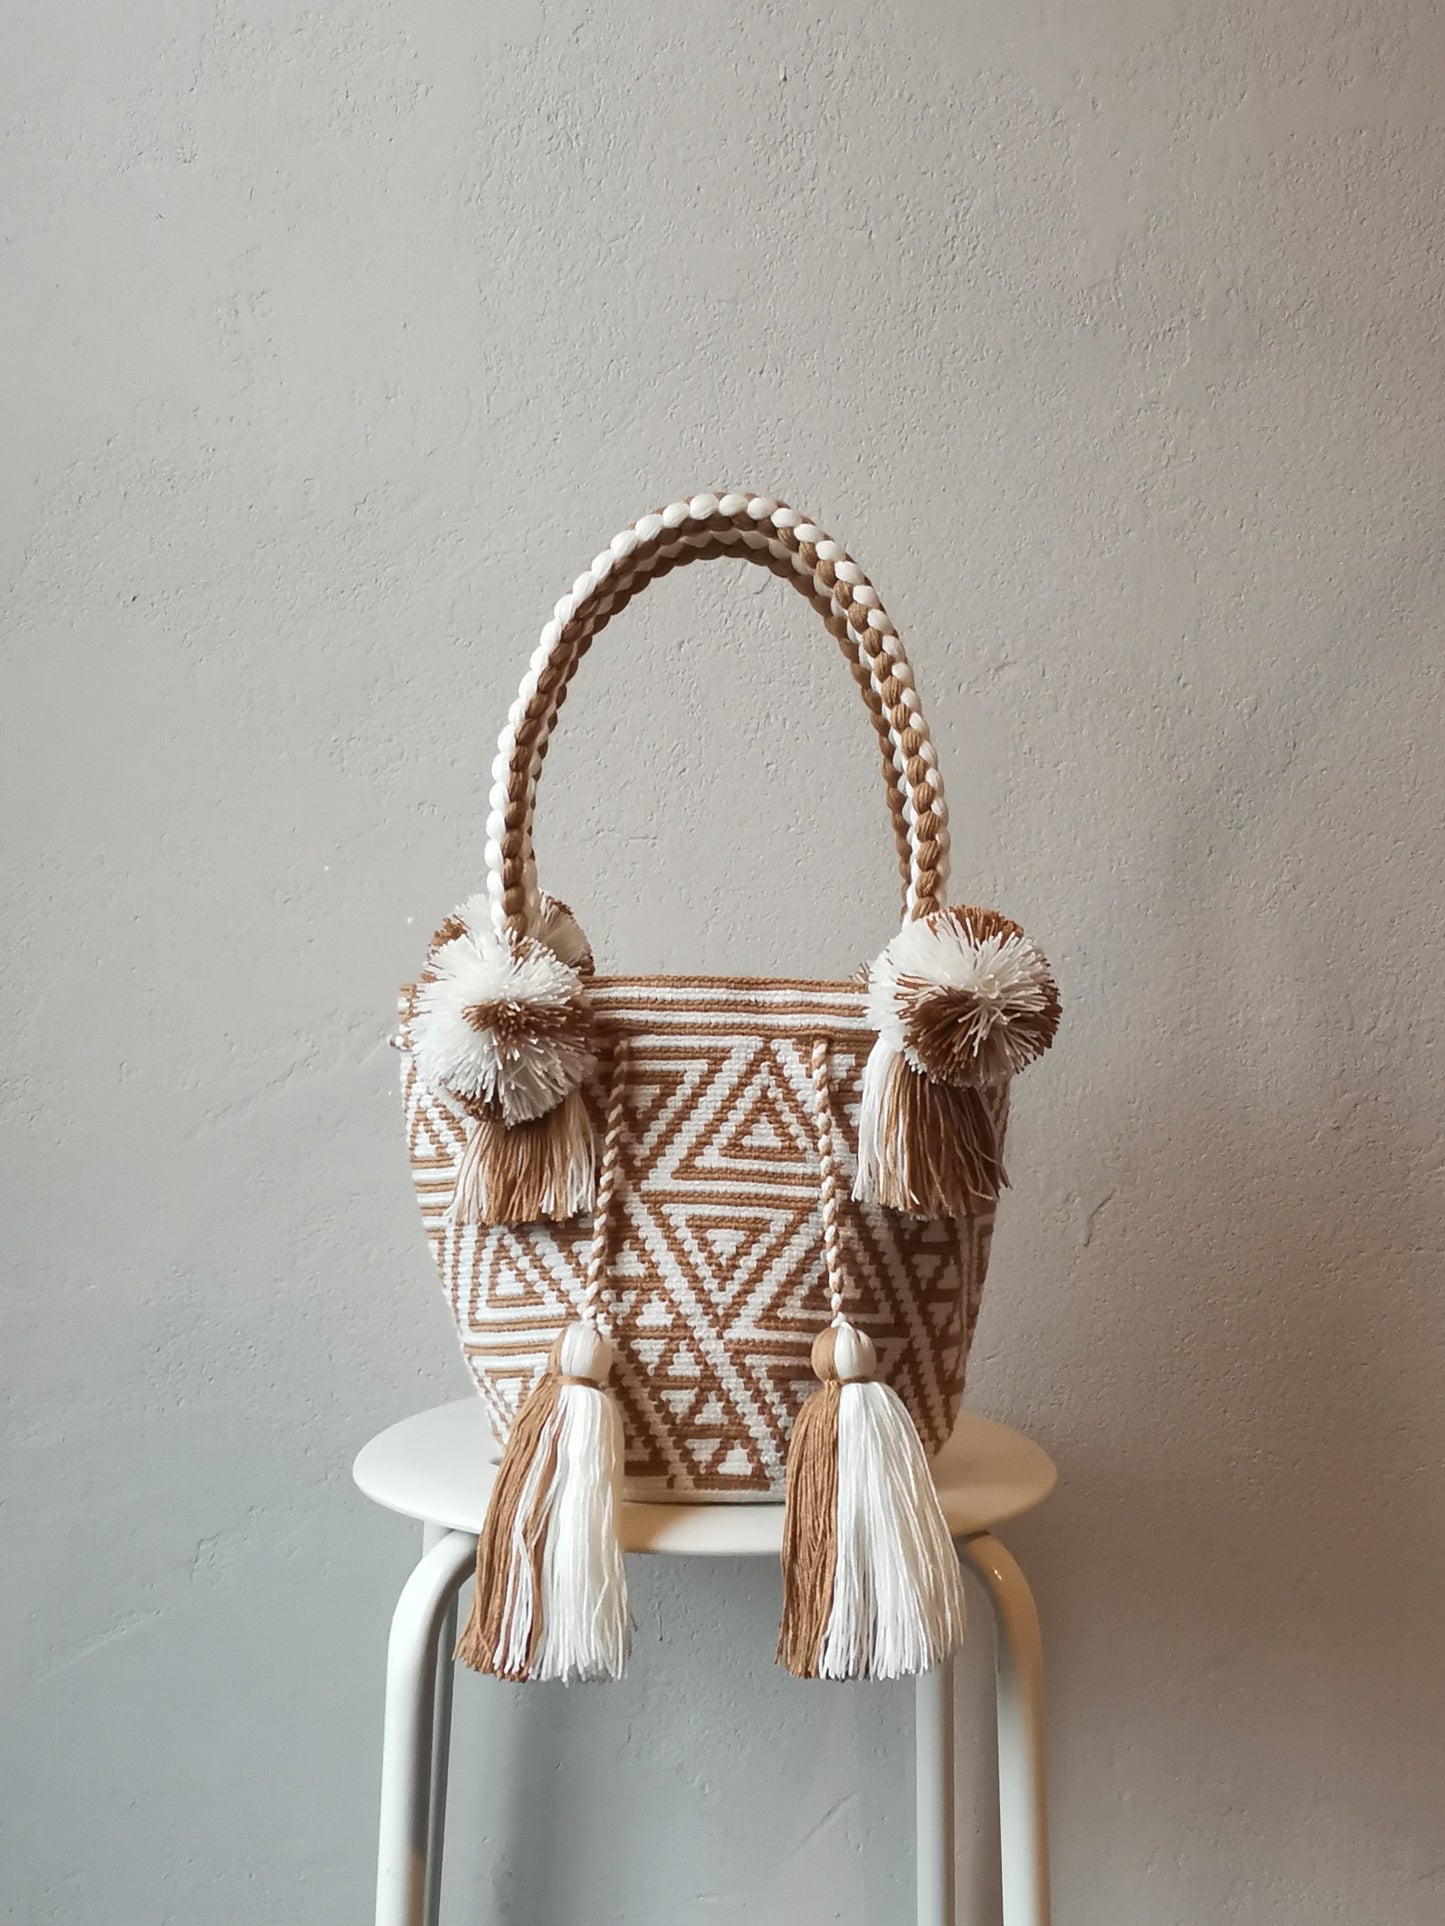 White and beige M mochila handbag